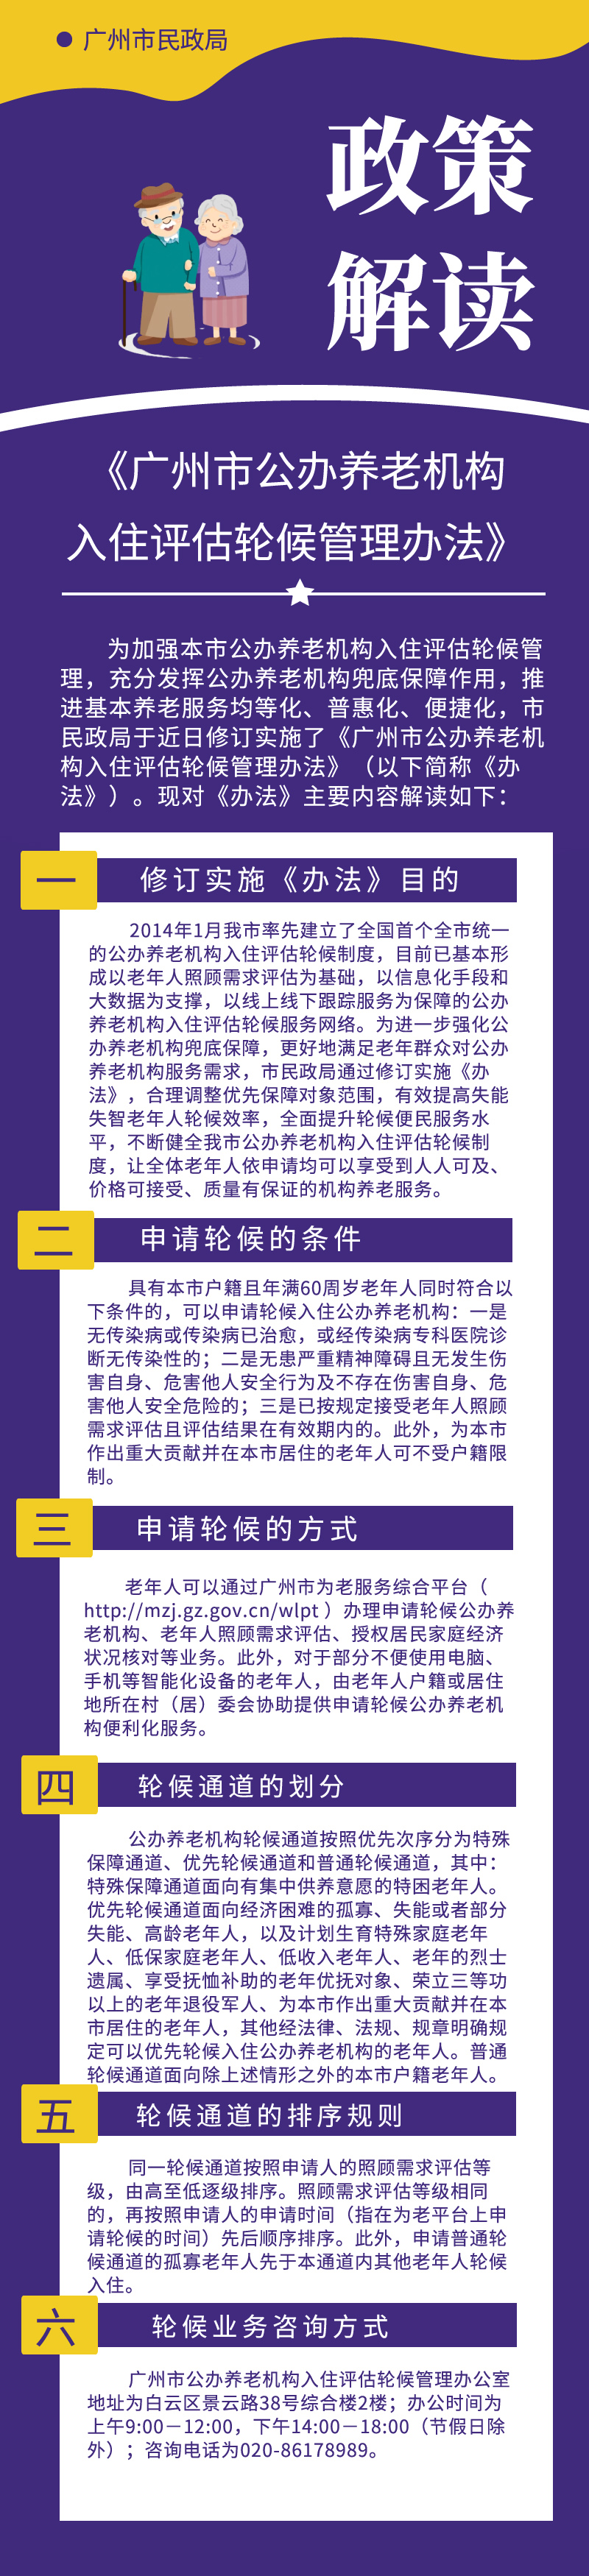 【一图读懂】《广州市公办养老机构入住评估轮候管理办法》政策解读.jpg